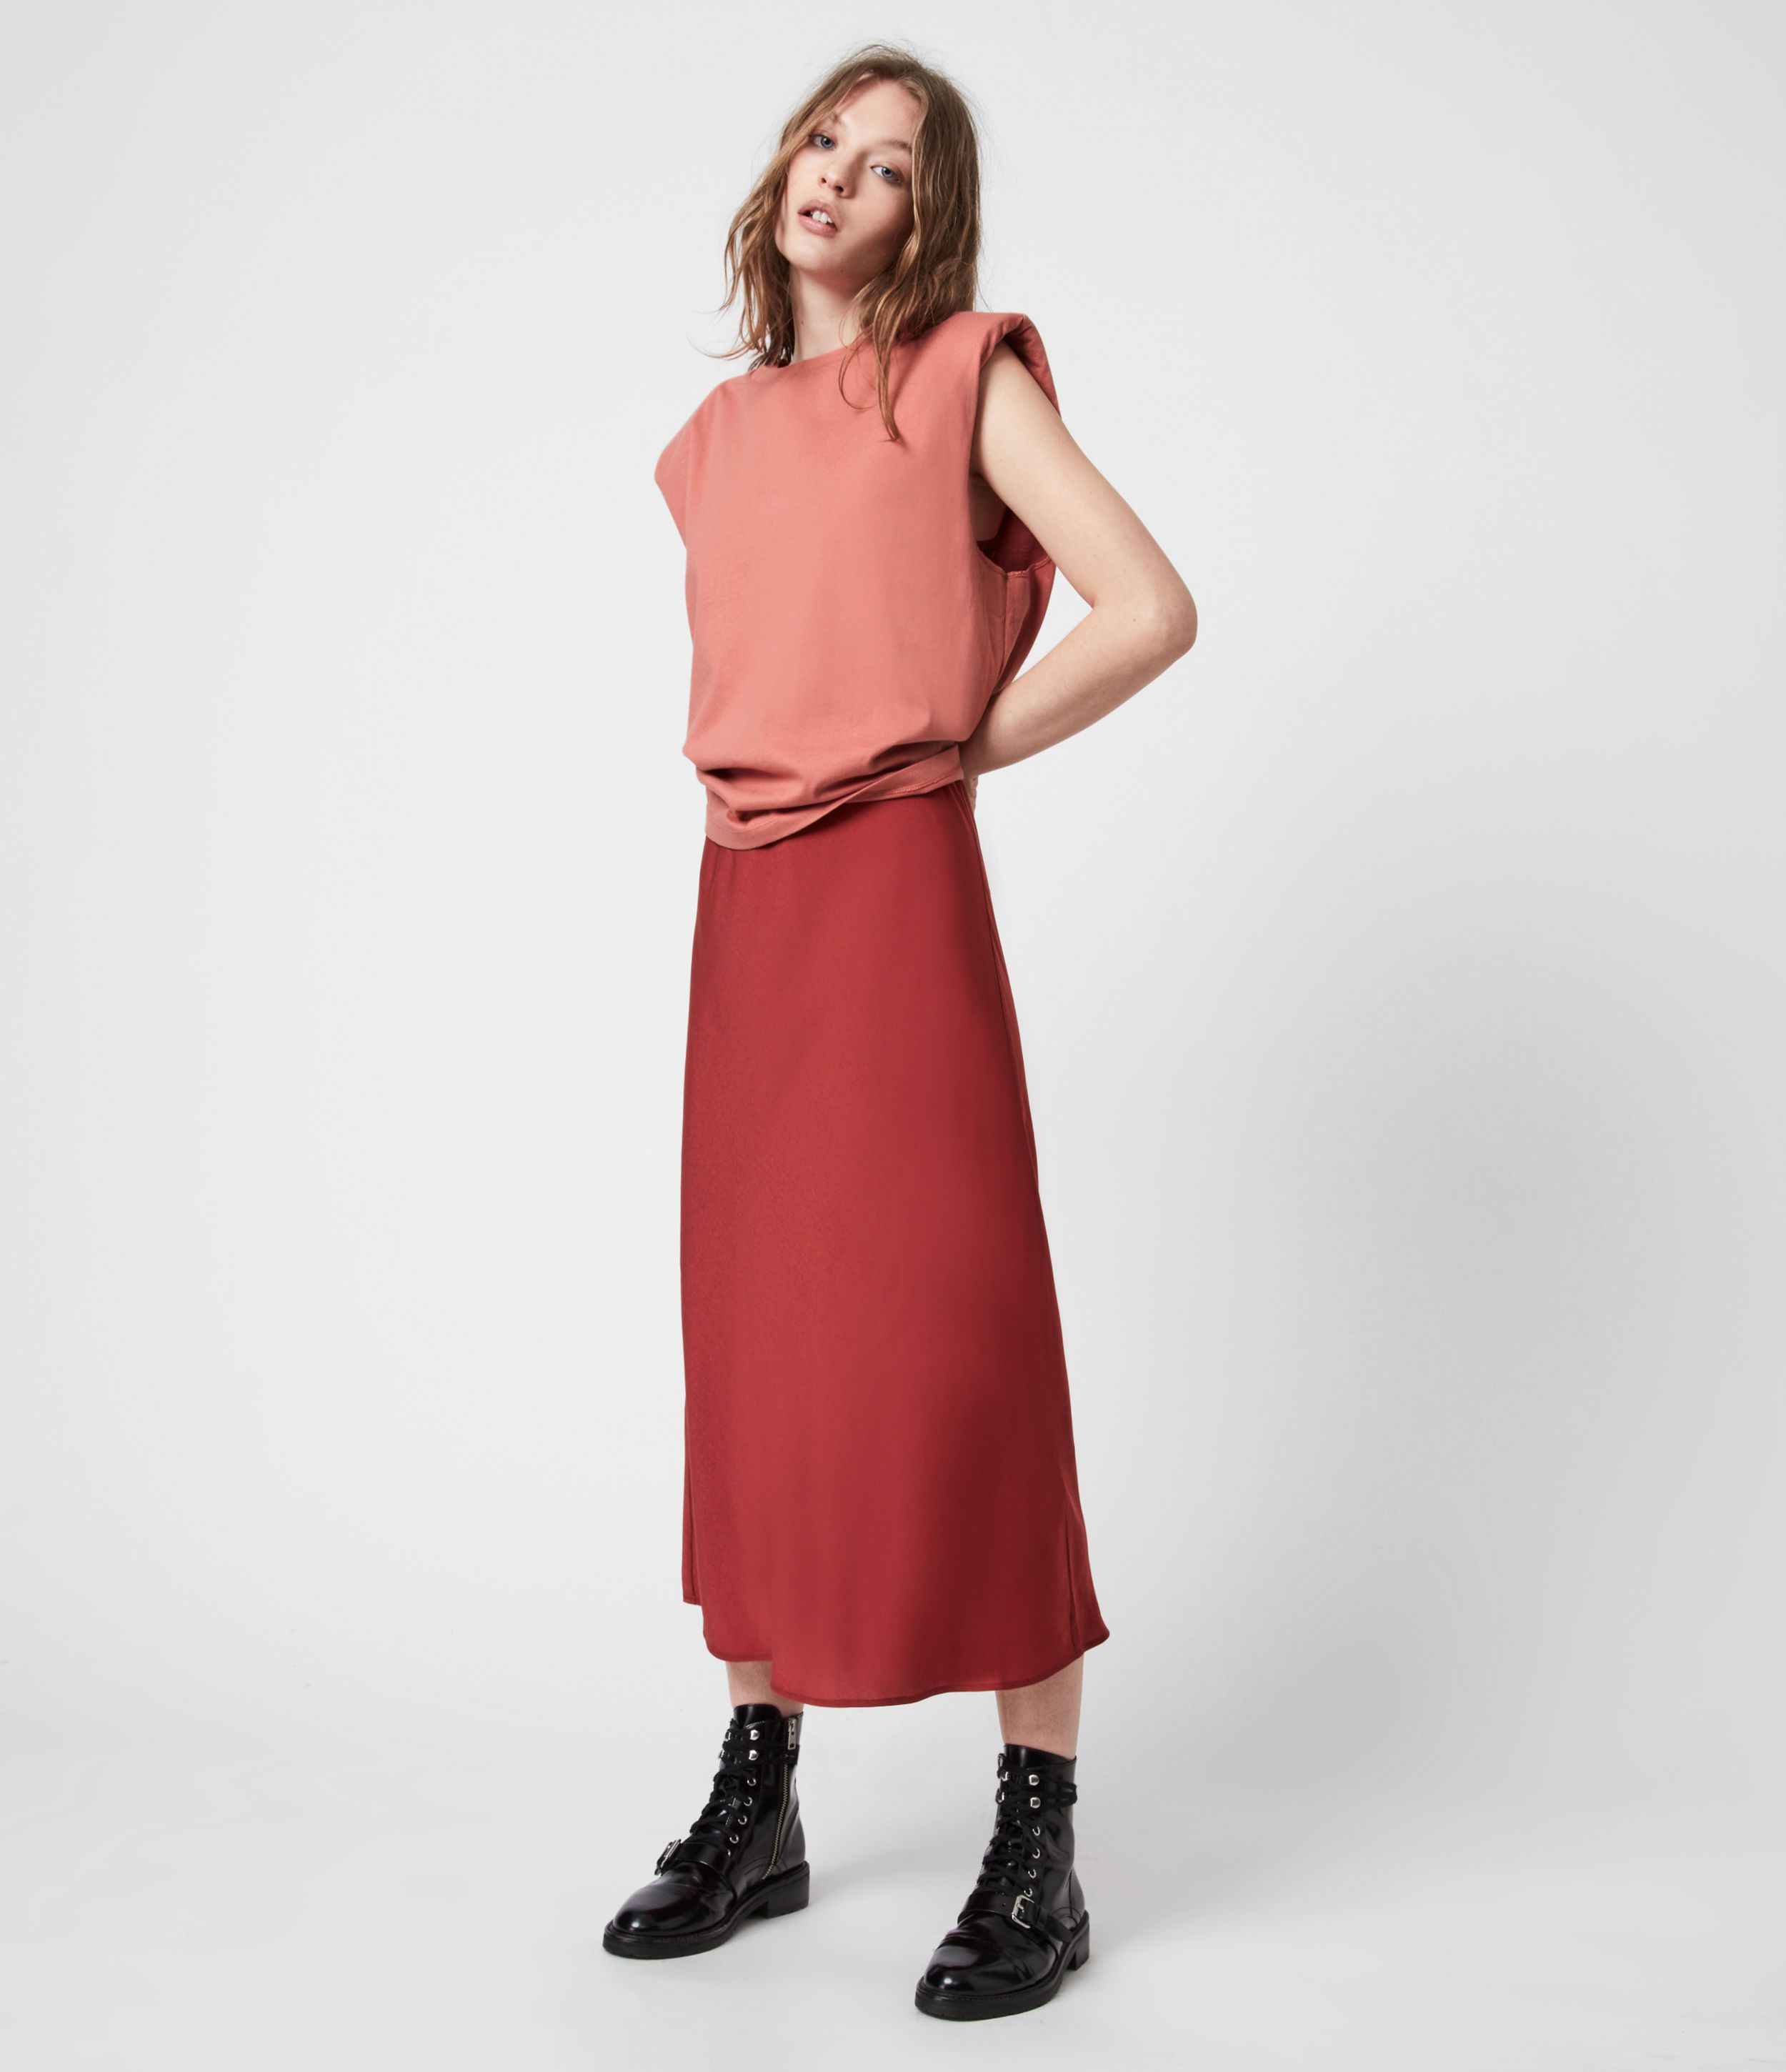 Tierny 2-In-1 Coni Dress | AllSaints UK